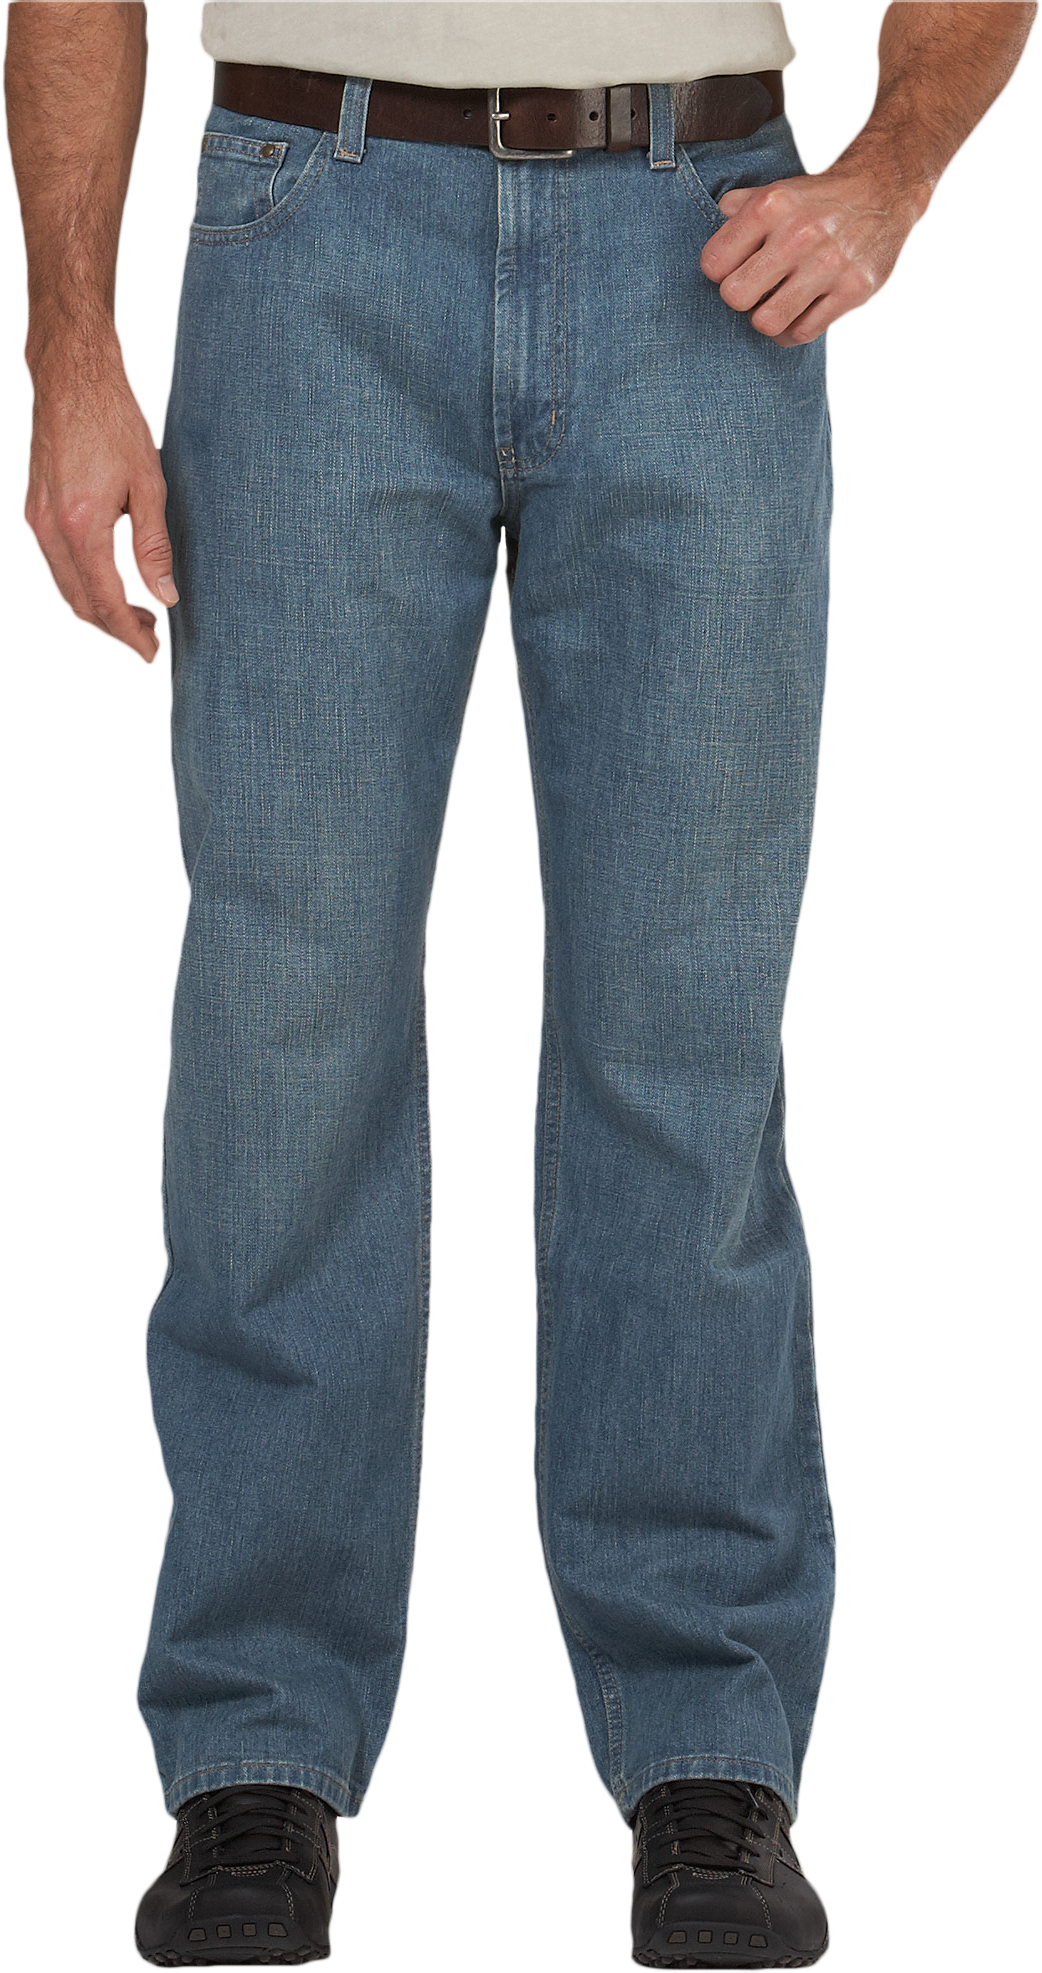 Pronto Blue, Light Blue, Relaxed Fit Jeans - Men's Pants | Men's Wearhouse